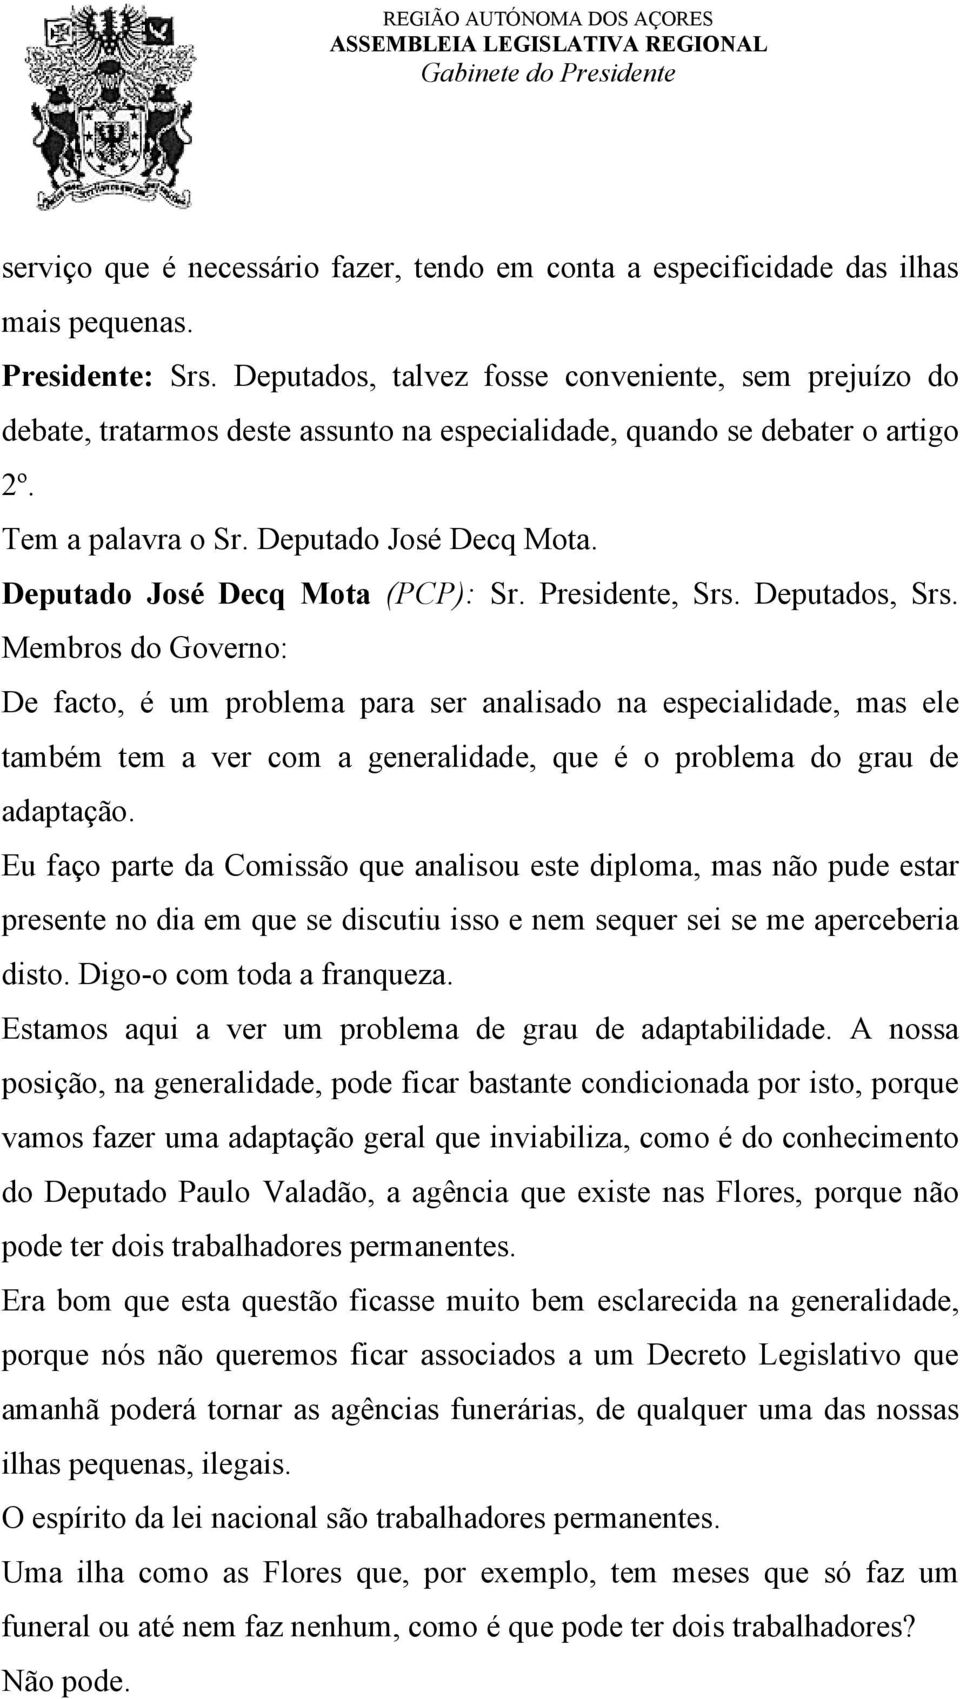 Deputado José Decq Mota (PCP): Sr. Presidente, Srs. Deputados, Srs.